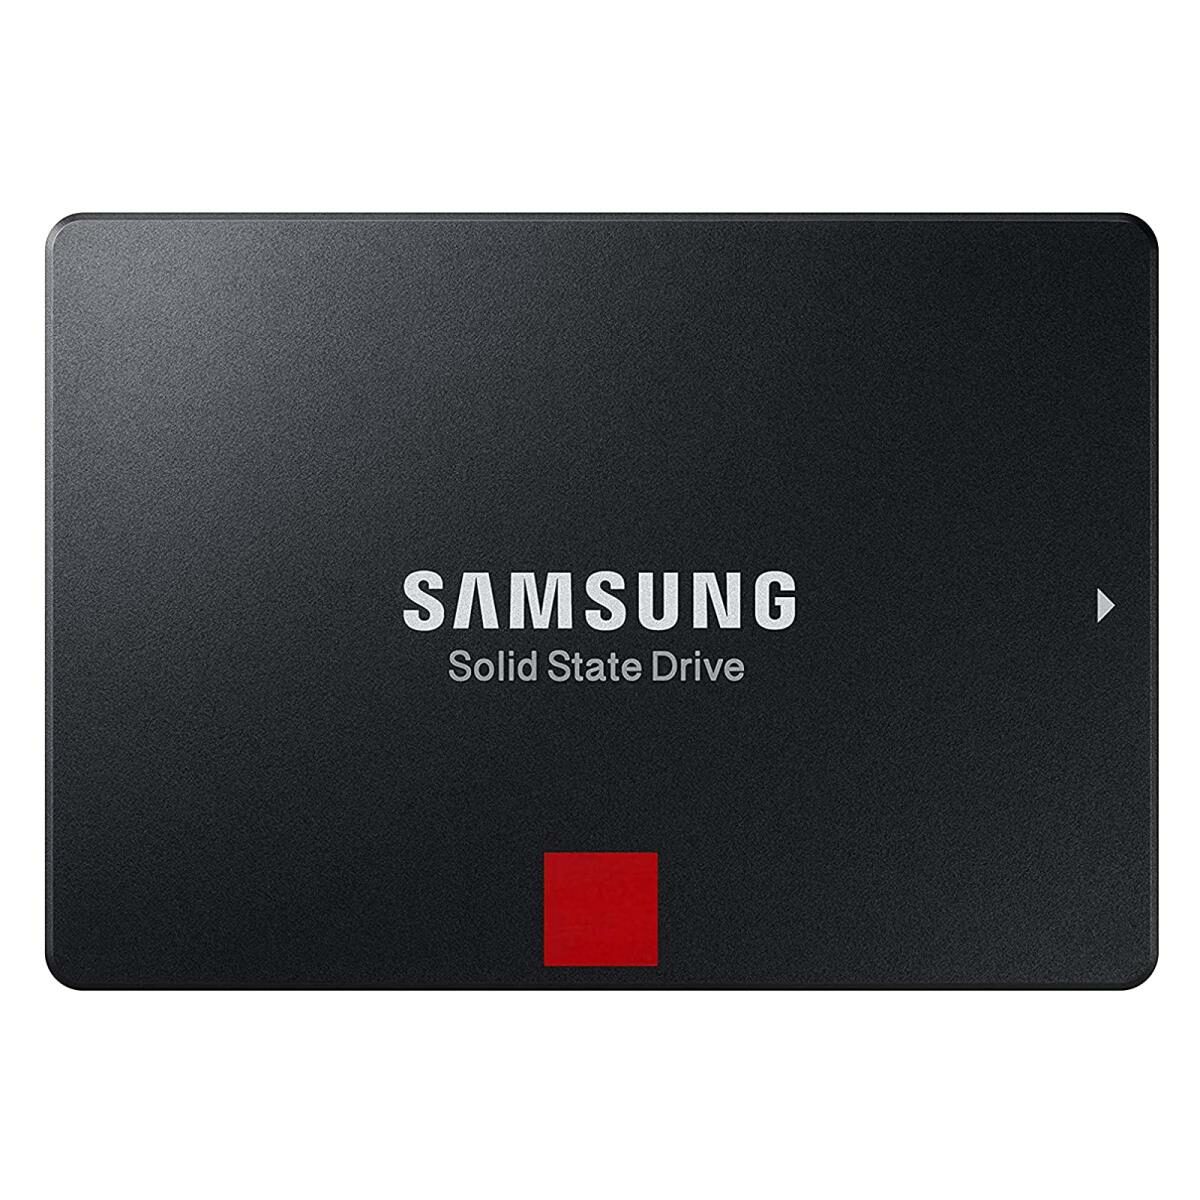 Samsung SSD 860 EVO SATA 3